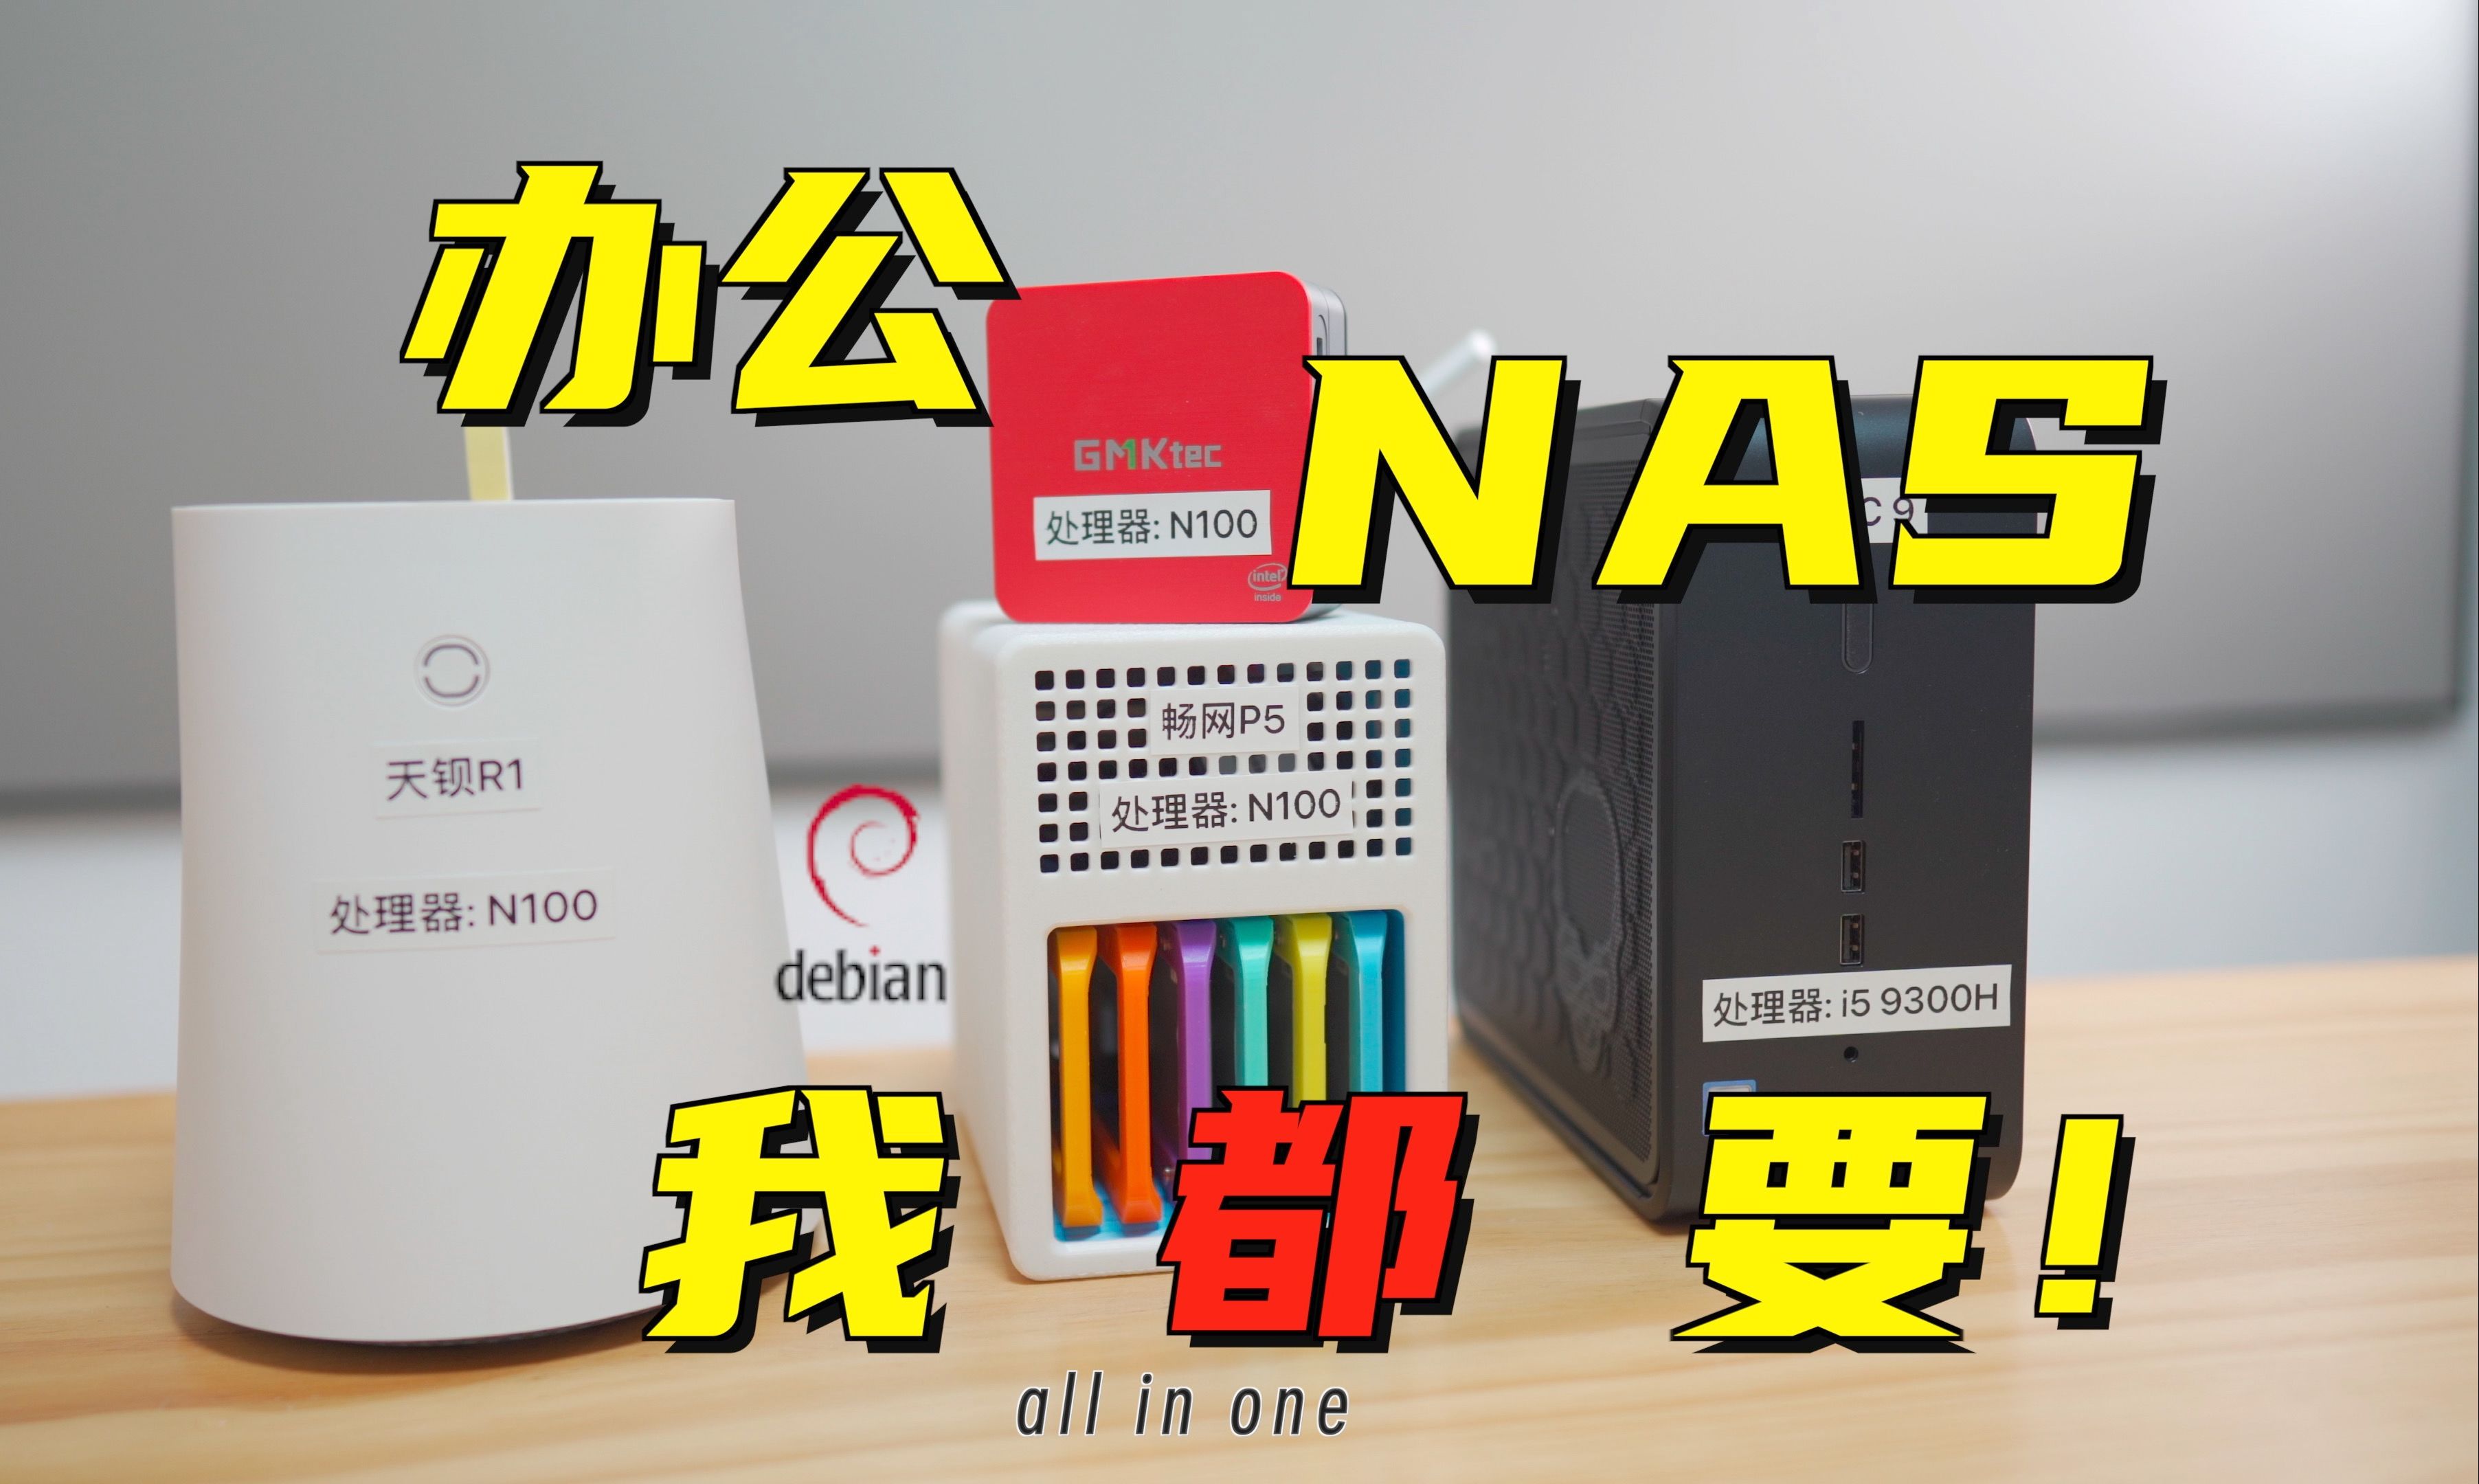 办公、NAS我都要 虚拟机&Docker一个不能少 基于Debian 12深度Deepin系统下一键部署”DIY NAS“ All in One 方案